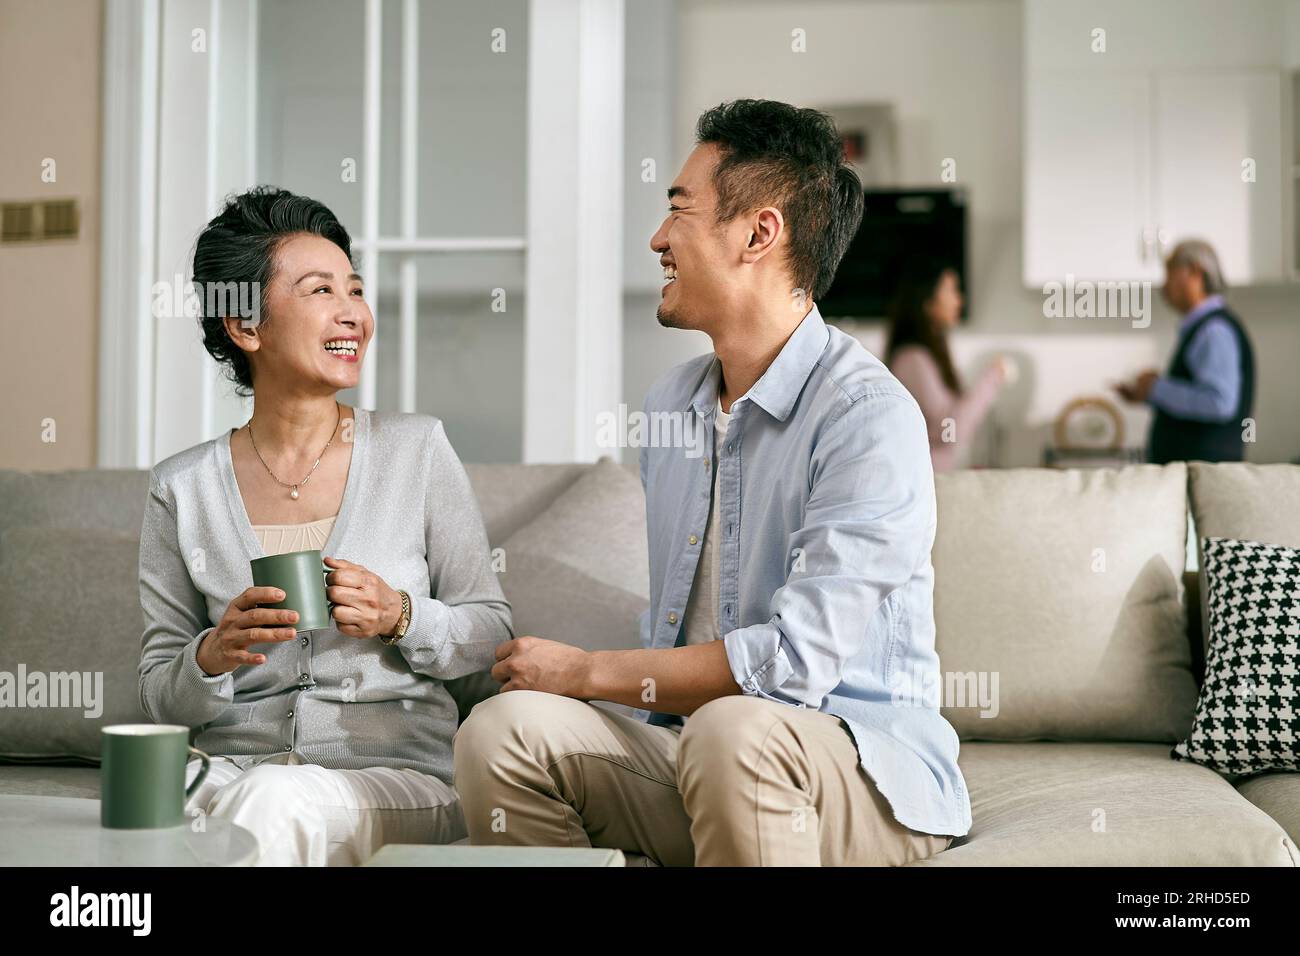 asiatischer erwachsener Sohn und ältere Mutter, die zu Hause auf der Couch im Wohnzimmer sitzen und ein angenehmes Gespräch führen Stockfoto